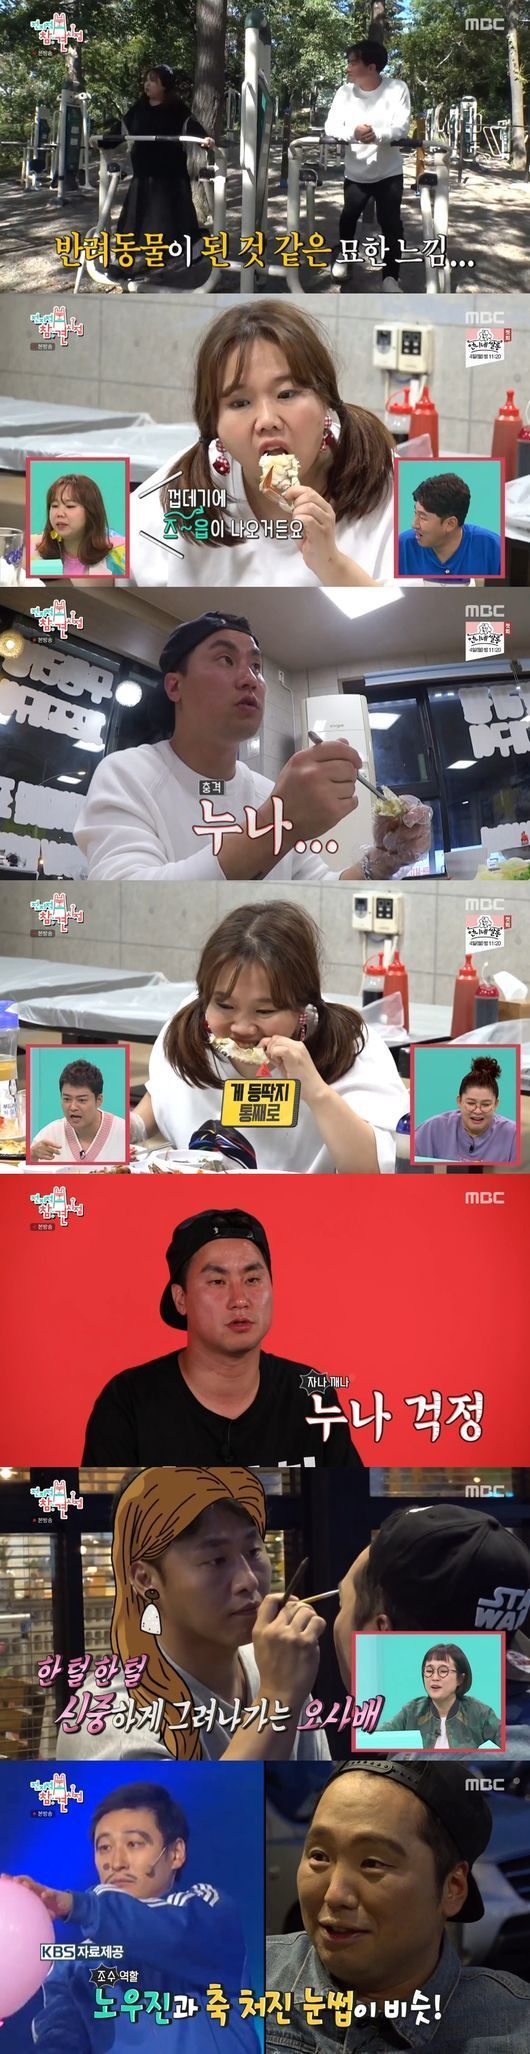 MBC '전지적 참견 시점' 코미디언 홍현희와 매니저 박찬열 / 사진=MBC